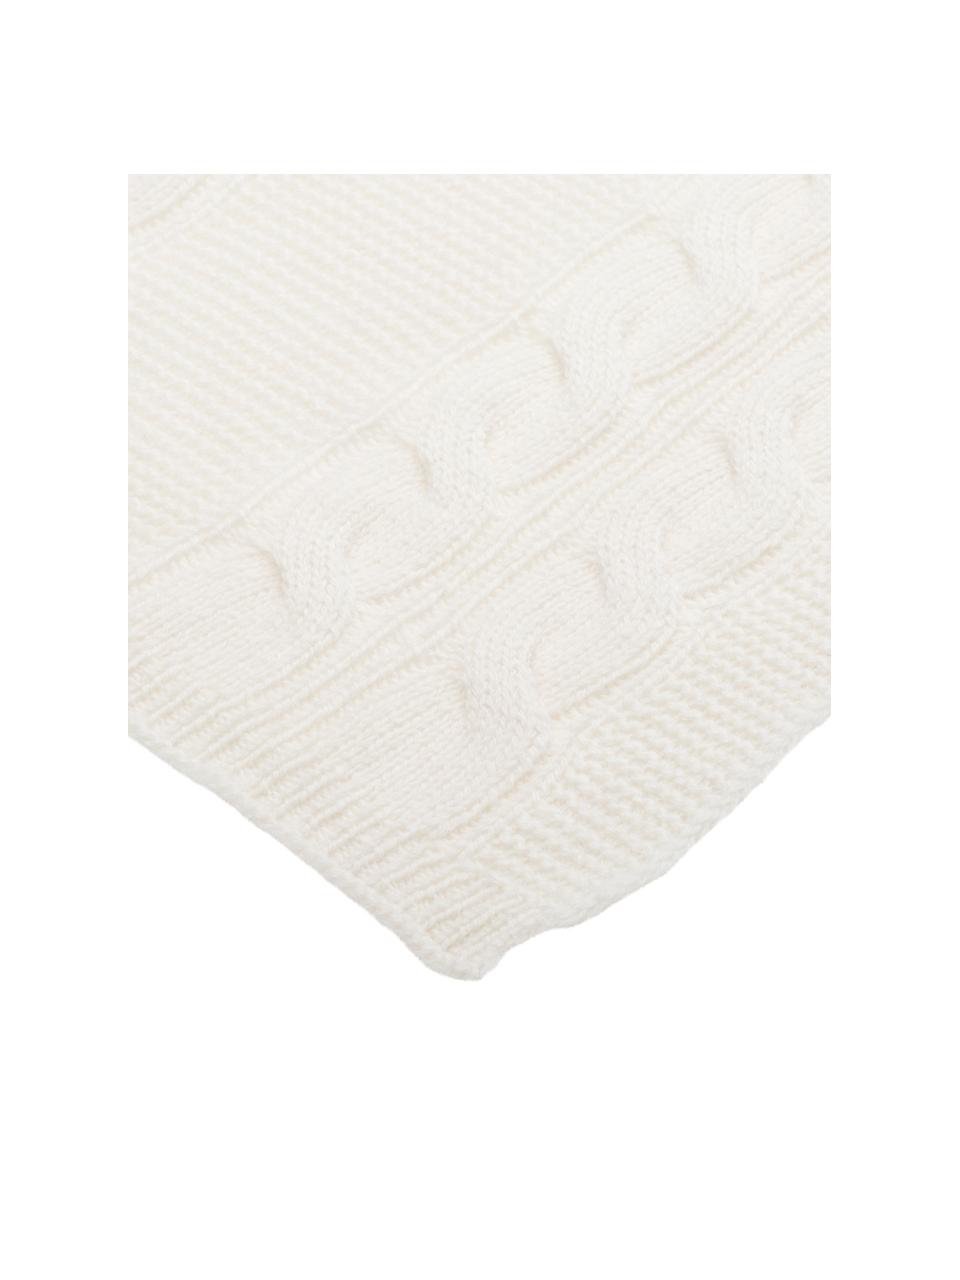 Manta de cachemira pura Leonie, 100% cachemira
La cachemira es un tejido muy suave, cómodo y cálido, Blanco crema, An 130 x L 170 cm